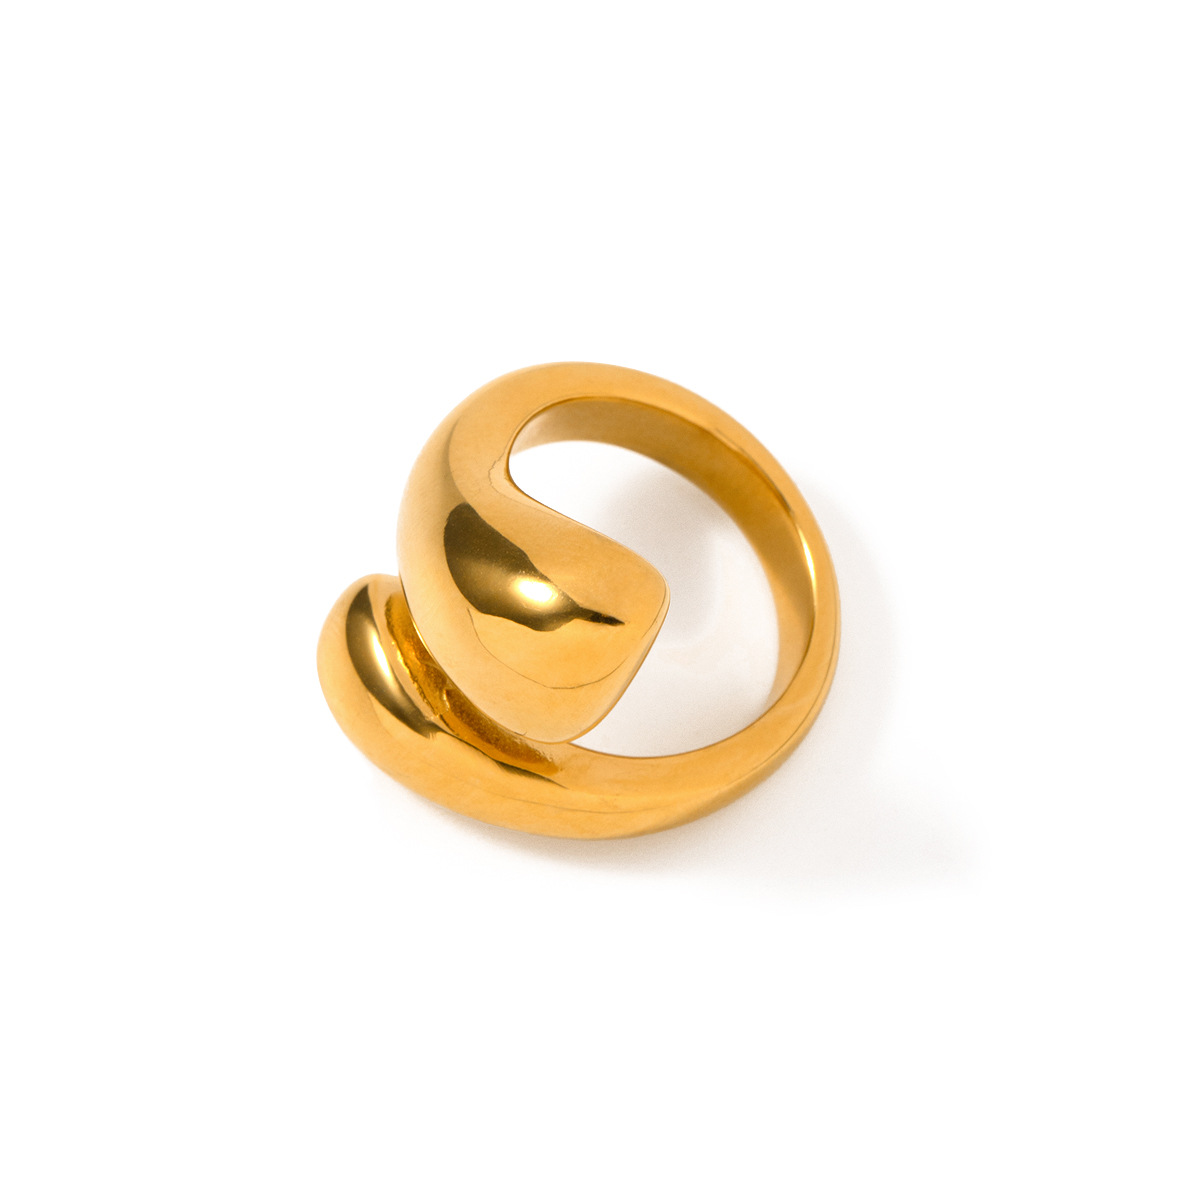 OEM и ODM массивные позолоченные кольца из нержавеющей стали с каплями воды, минималистичные регулируемые золотые кольца для женщин